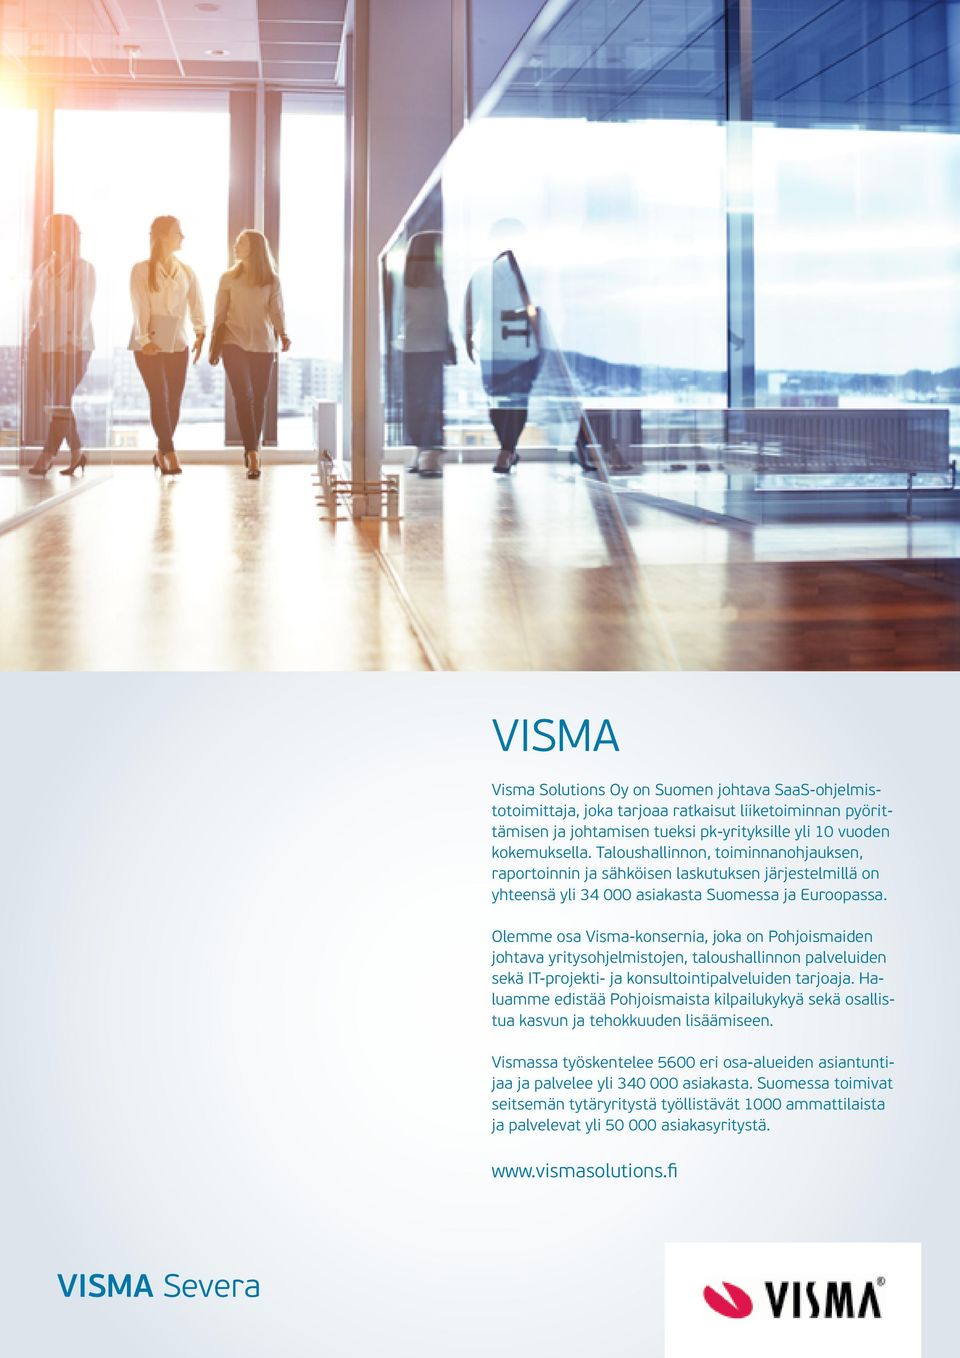 Olemme osa Visma-konsernia, joka on Pohjoismaiden johtava yritysohjelmistojen, taloushallinnon palveluiden sekä IT-projekti- ja konsultointipalveluiden tarjoaja.